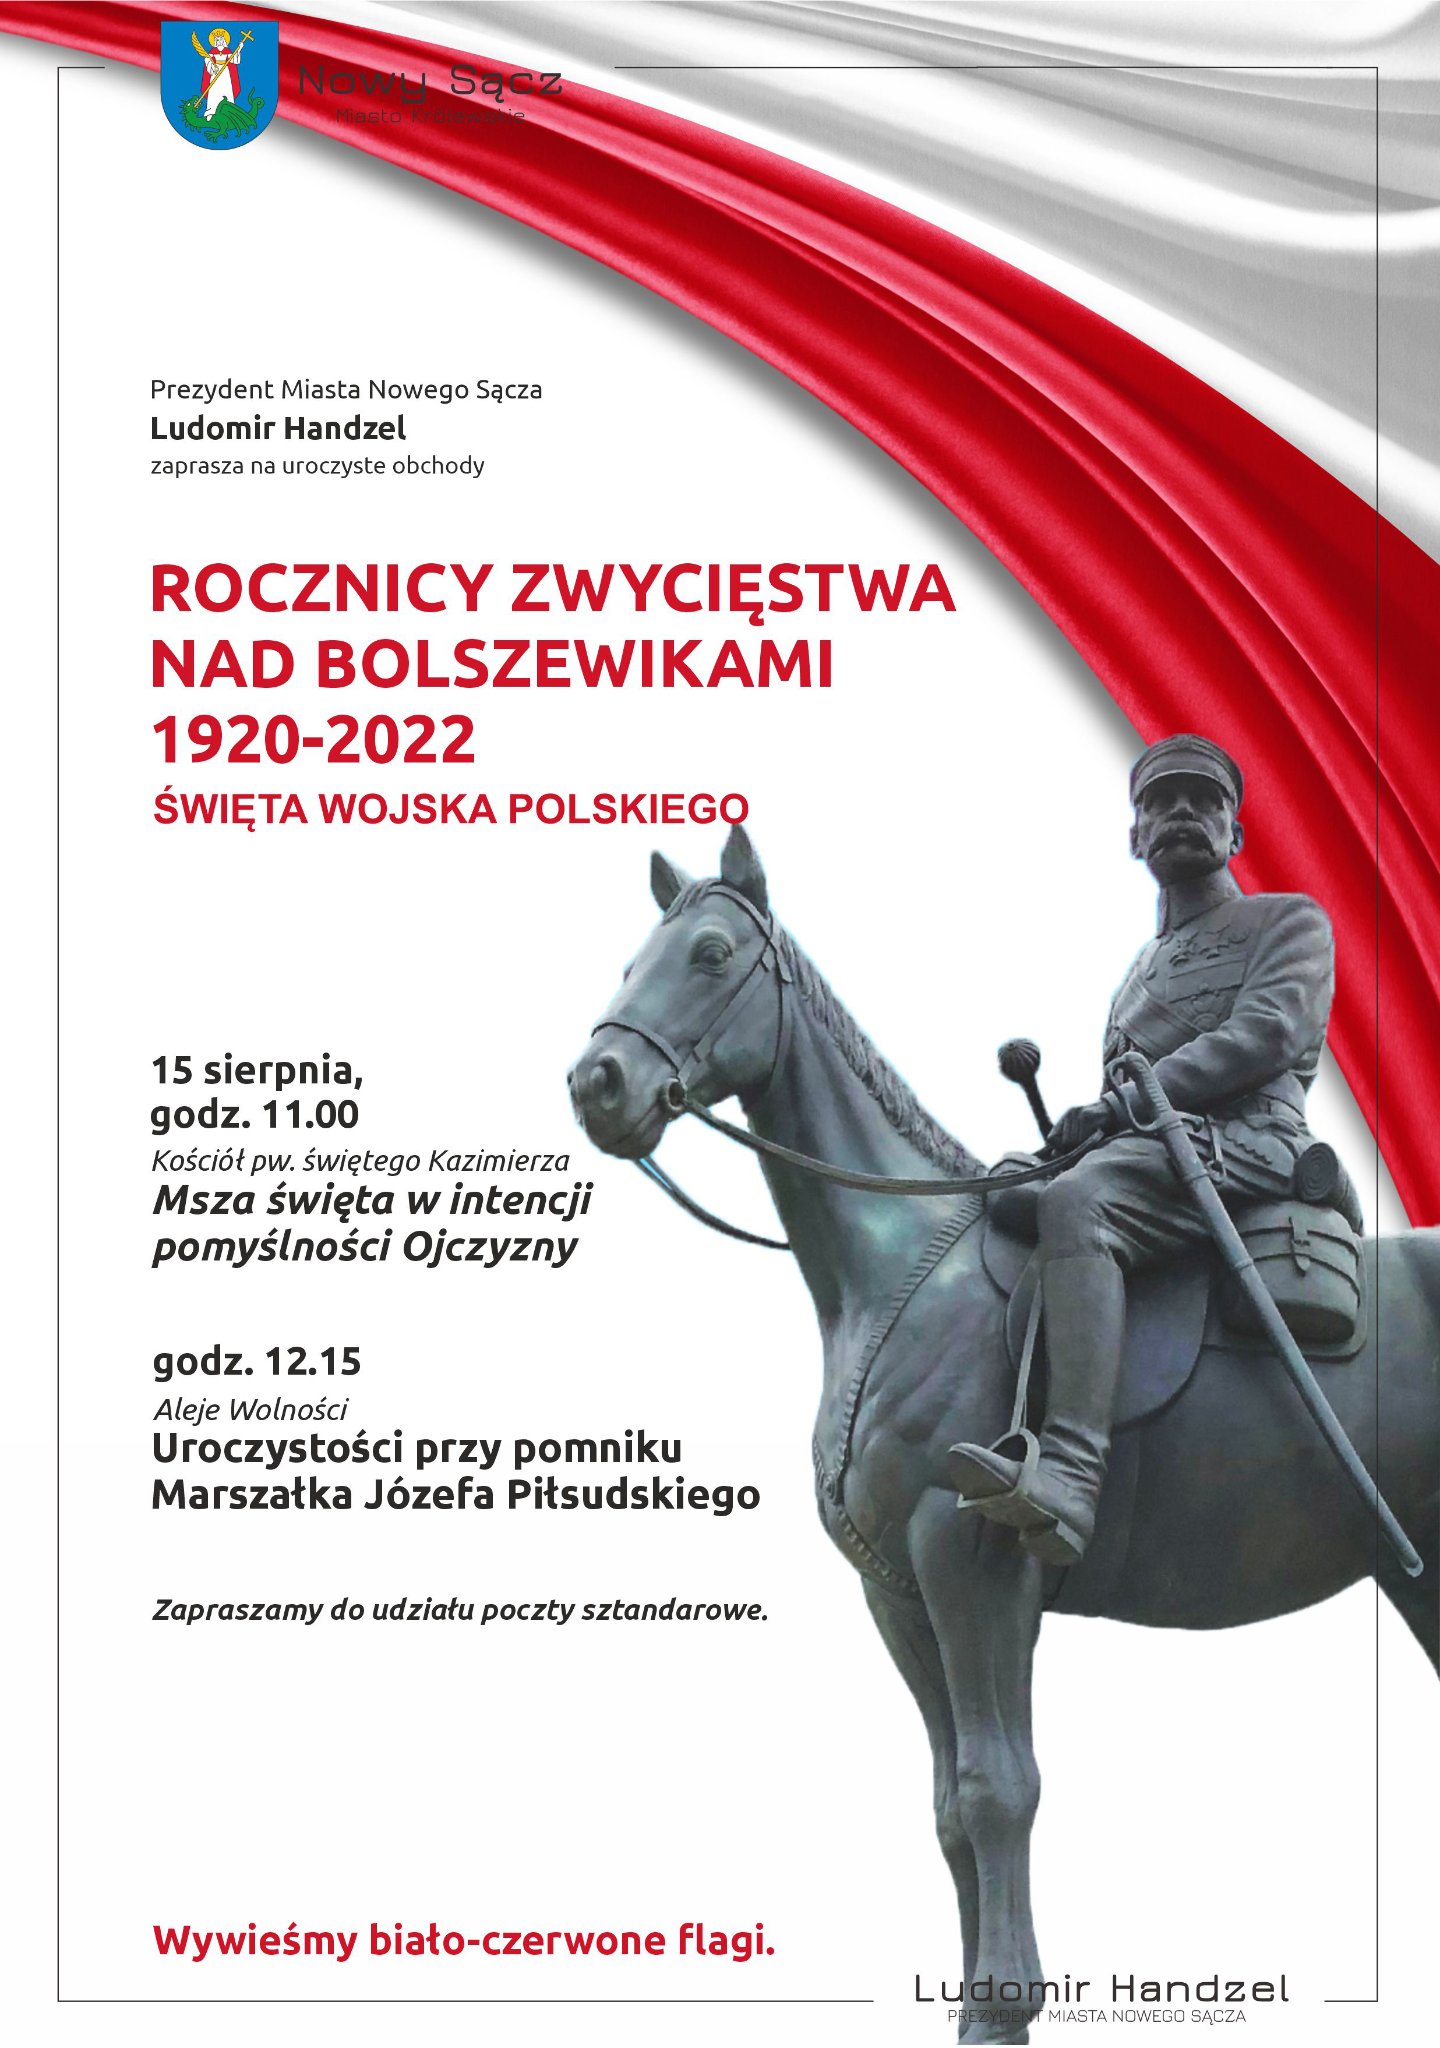 🇵🇱🇵🇱Zapraszam na uroczyste obchody 102. rocznicy Zwycięstwa Nad Bolszewikami 1920 – 2022 i Święta Wojska Polskiego. 🇵🇱🇵🇱